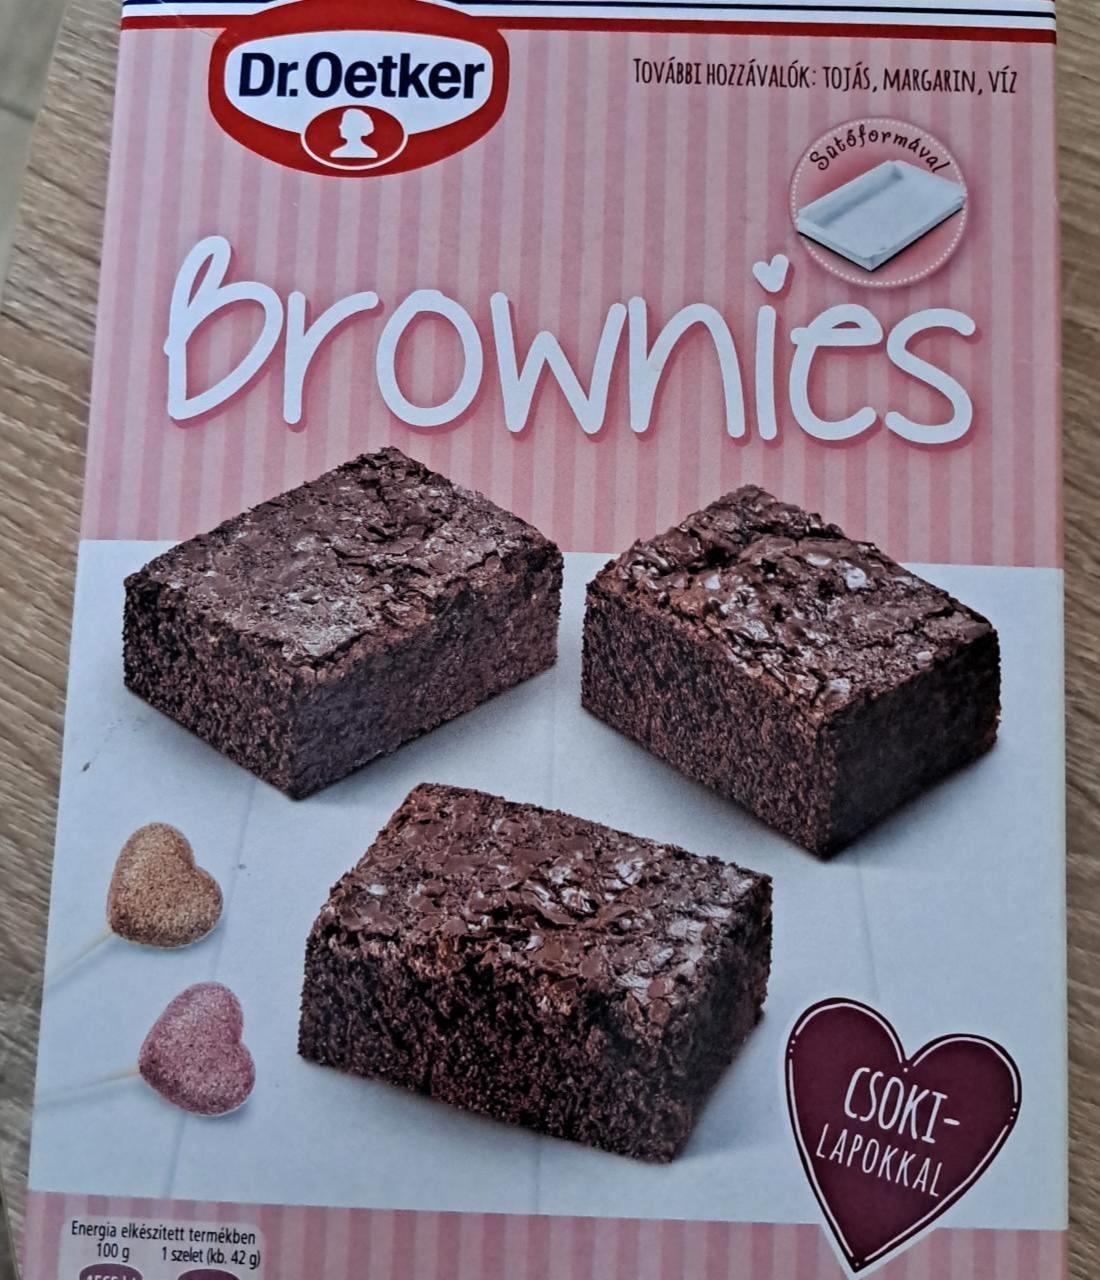 Képek - Brownies csoki lapokkal Dr.Oetker